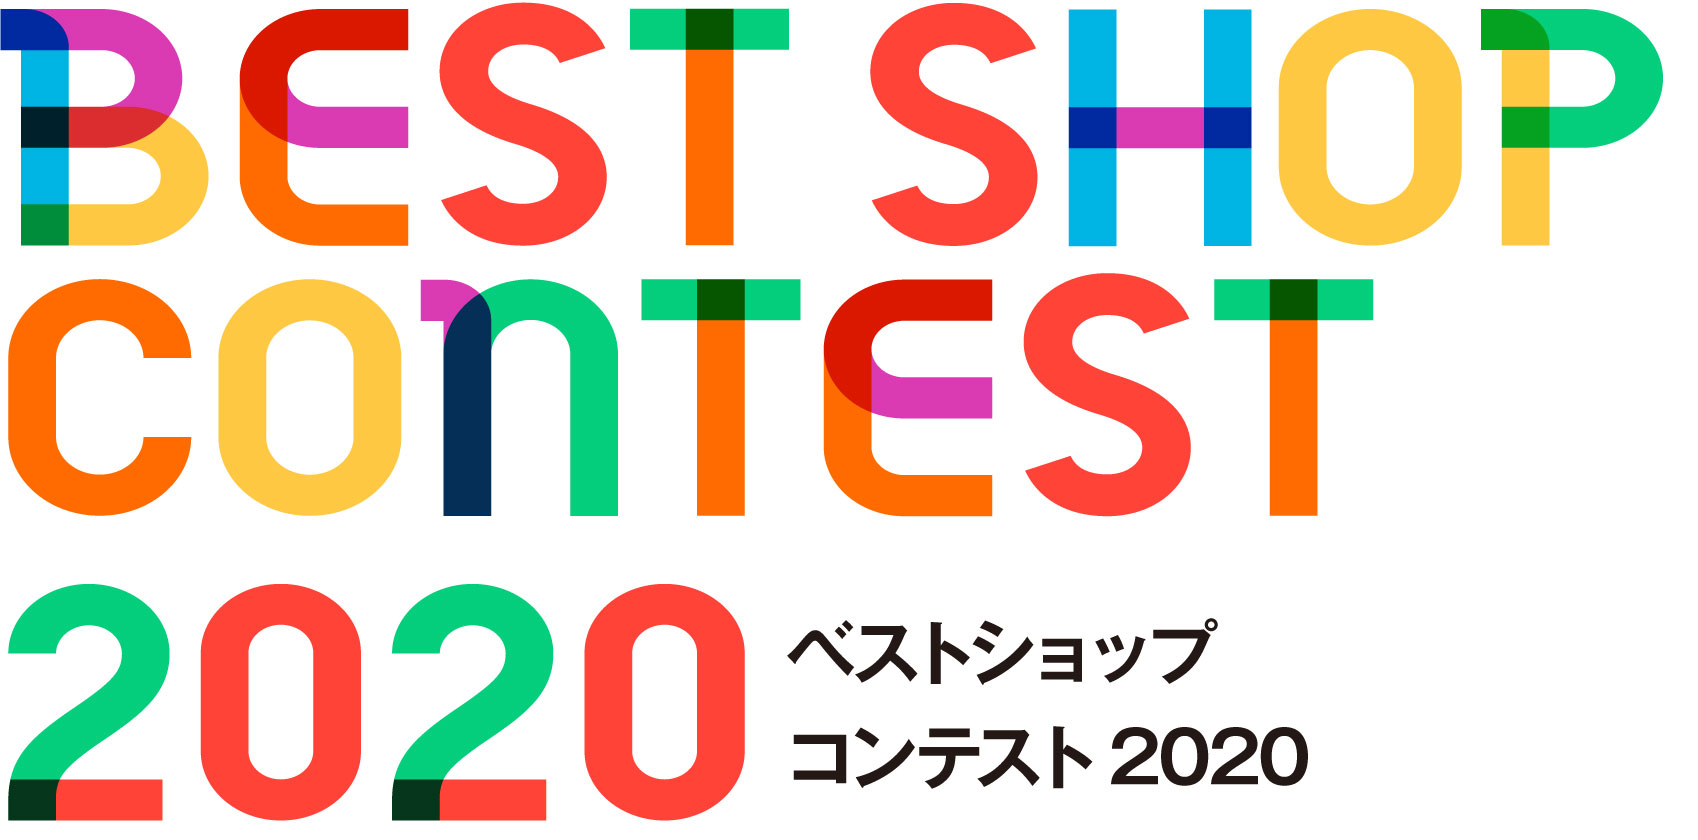 ベスト・ショップ・コンテスト2020結果発表